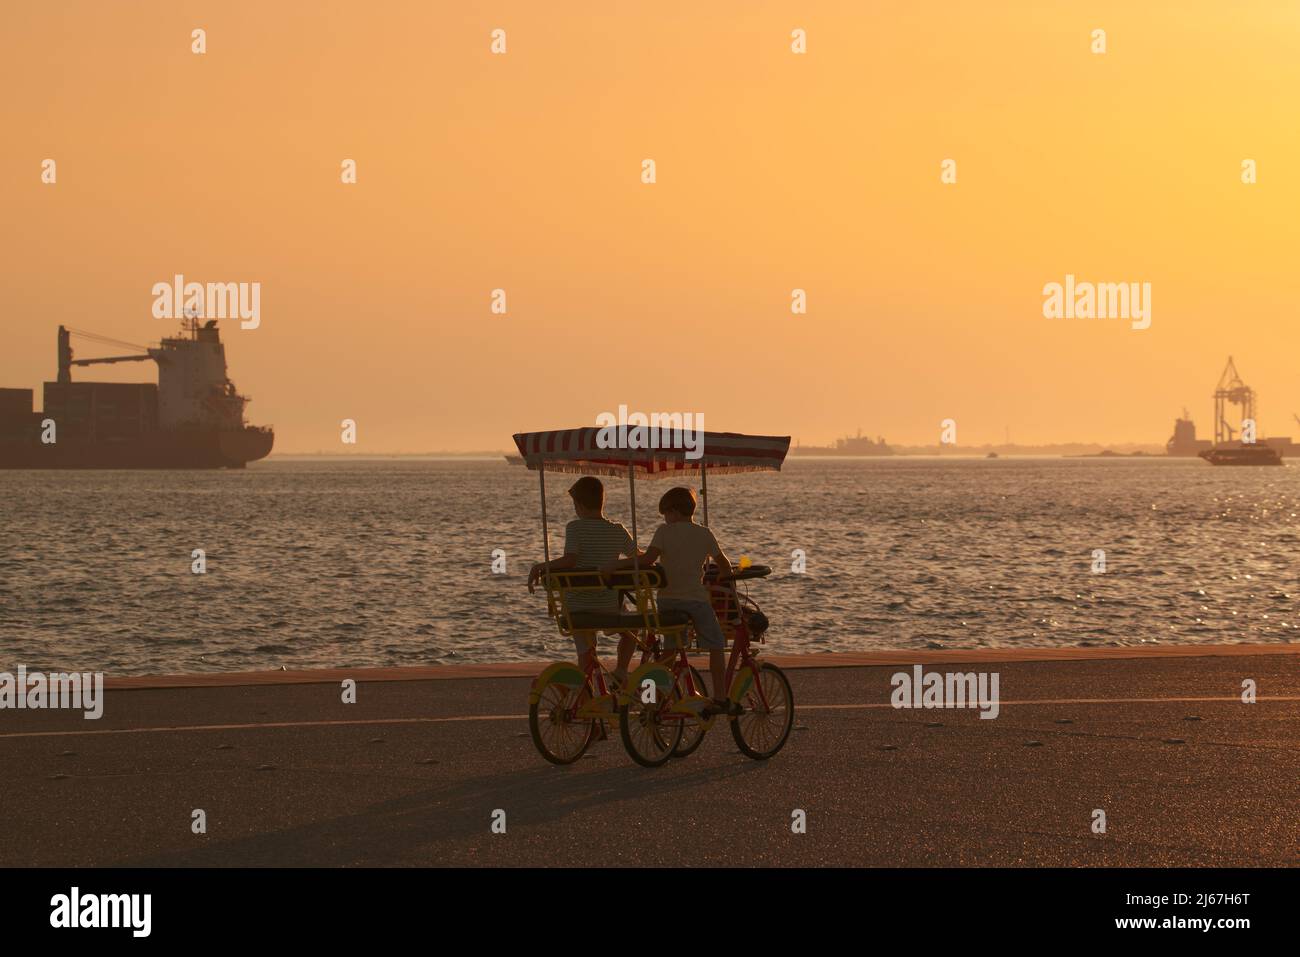 Deux garçons dans un vélo à quatre roues (vélo de surrey) à la promenade regardant un navire dans la mer au coucher du soleil. Banque D'Images